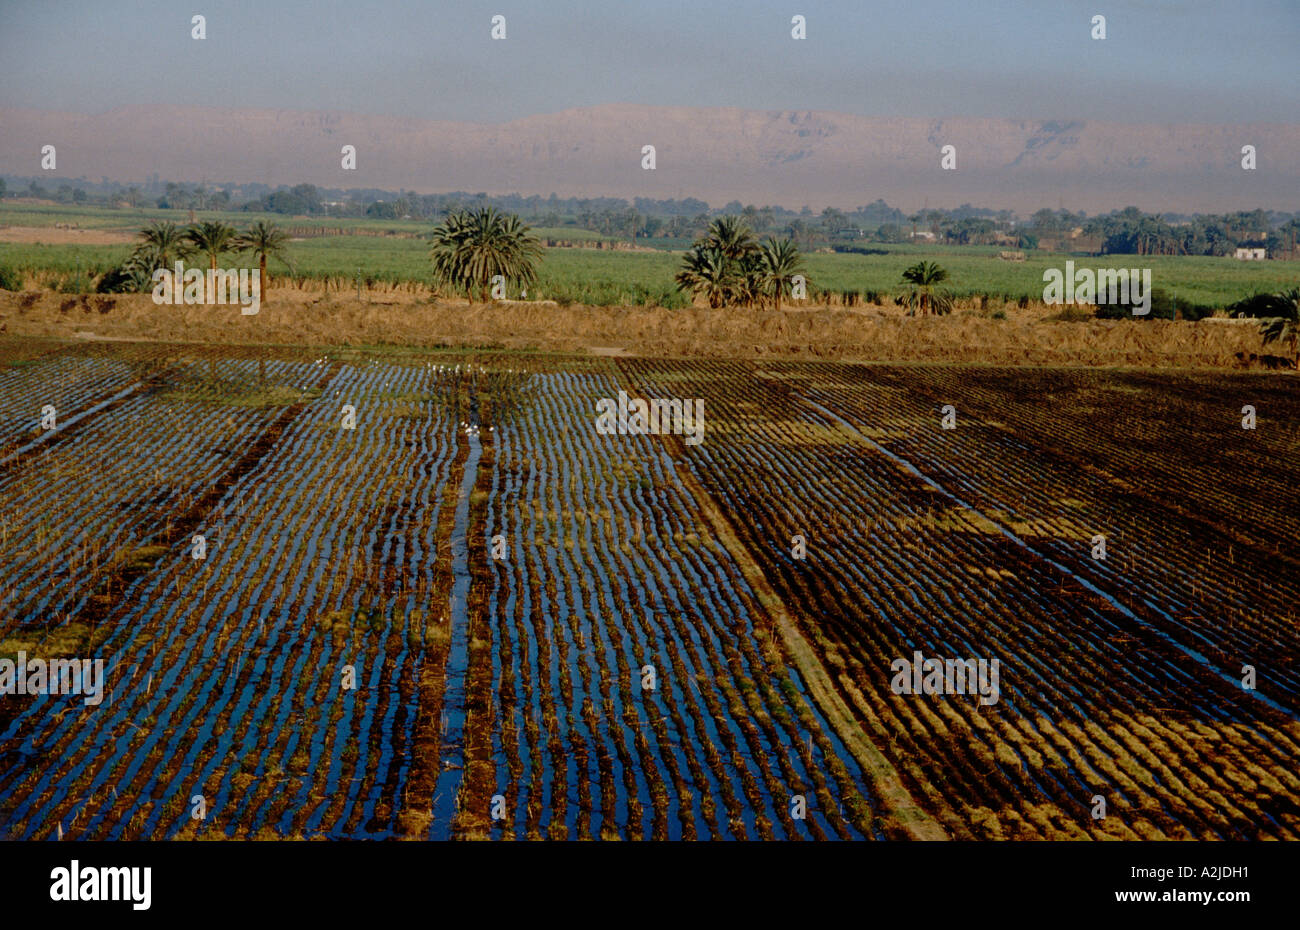 Africa, Egitto, Luxor, vista aerea di campi di canna da zucchero in Cisgiordania dove la fertile terra agricola incontra il deserto Foto Stock